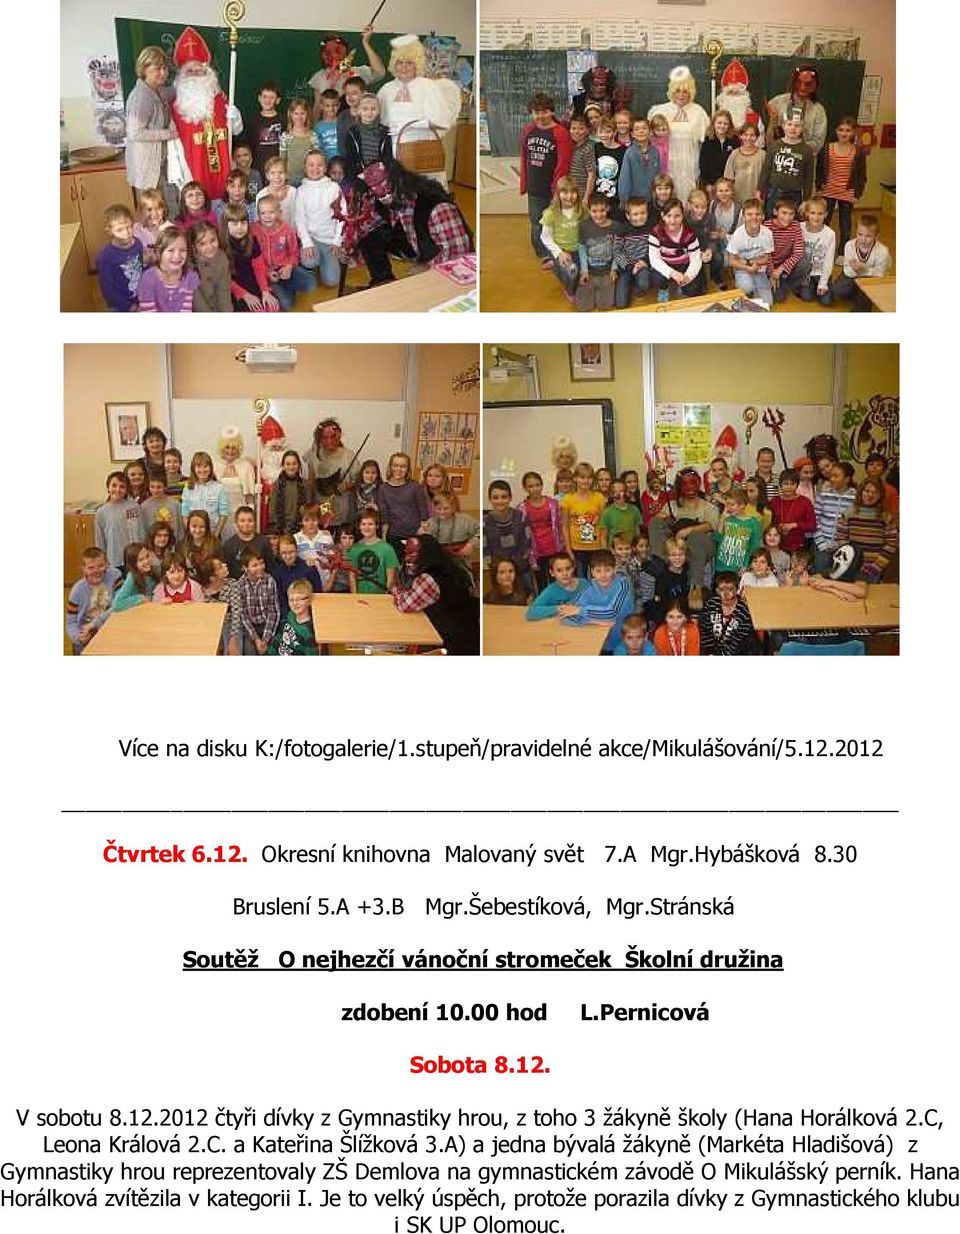 V sobotu 8.12.2012 čtyři dívky z Gymnastiky hrou, z toho 3 žákyně školy (Hana Horálková 2.C, Leona Králová 2.C. a Kateřina Šlížková 3.